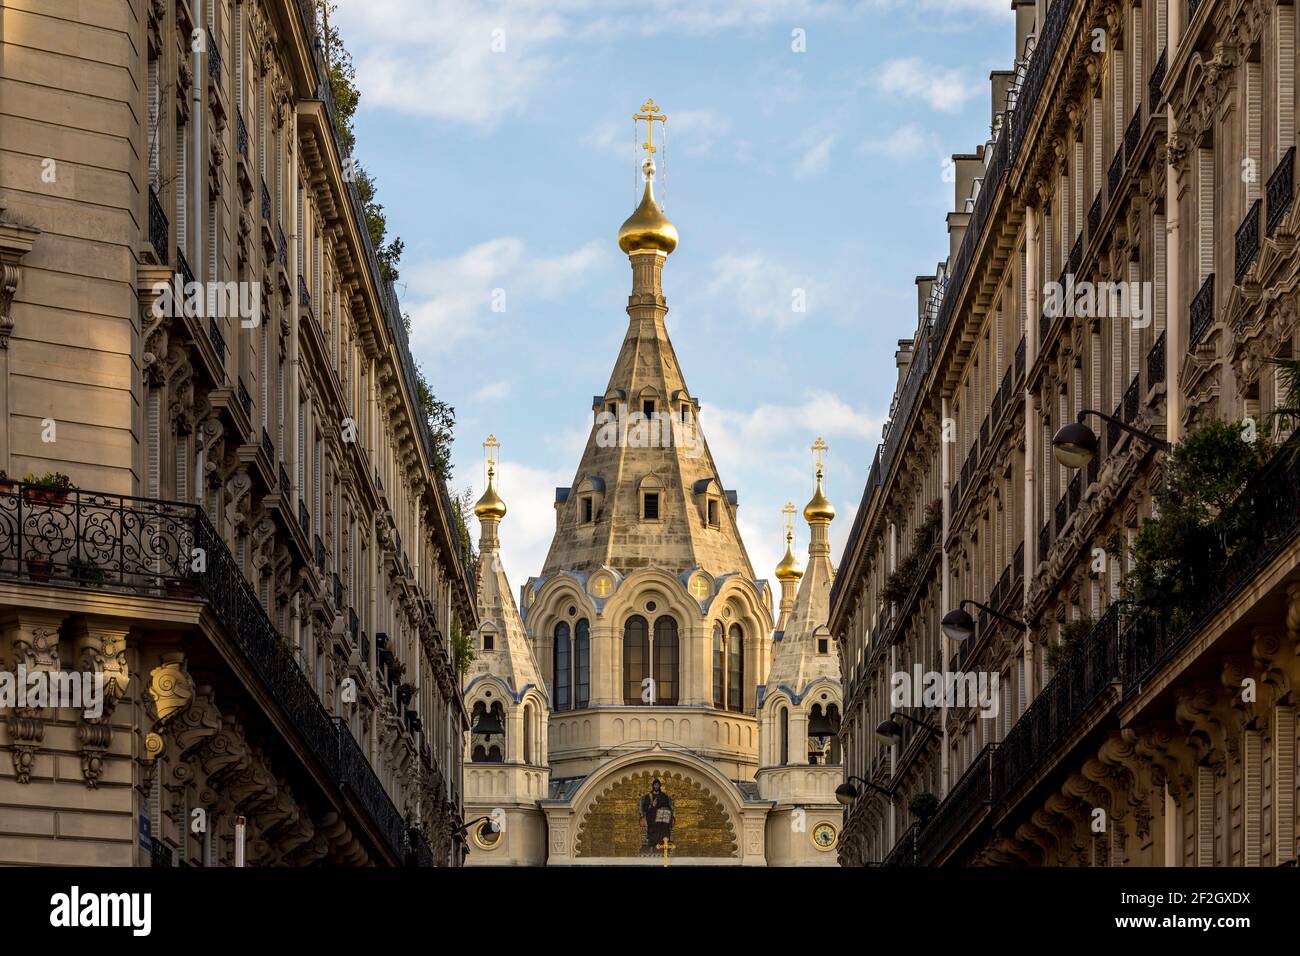 Paris, Frankreich - 19. Februar 2021: Die Alexander-Nevsky-Kathedrale ist eine russisch-orthodoxe Kathedrale im 8th. Arrondissement von Paris. ICH Stockfoto